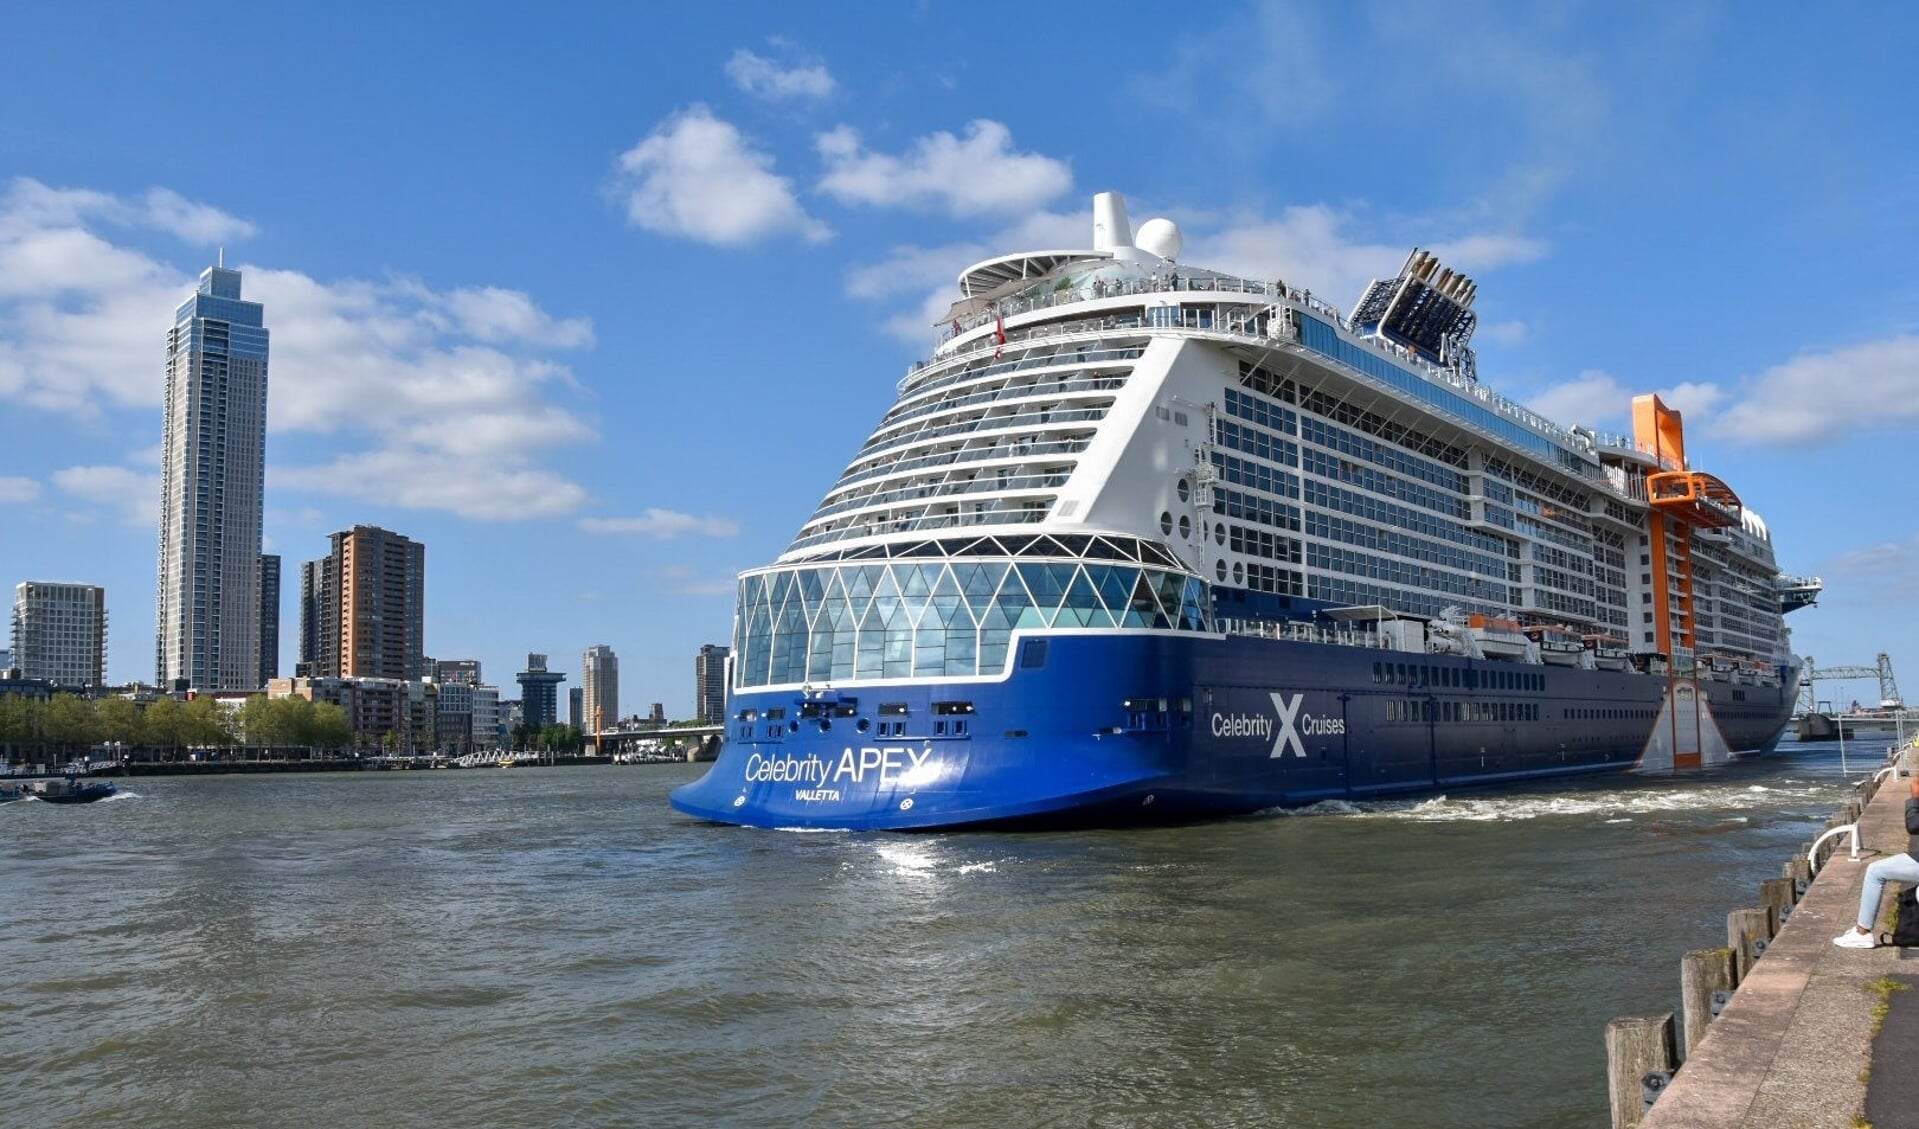 De Celebrity APEX bij vertrek uit de Rotterdamse haven. Foto: Jan de Korte